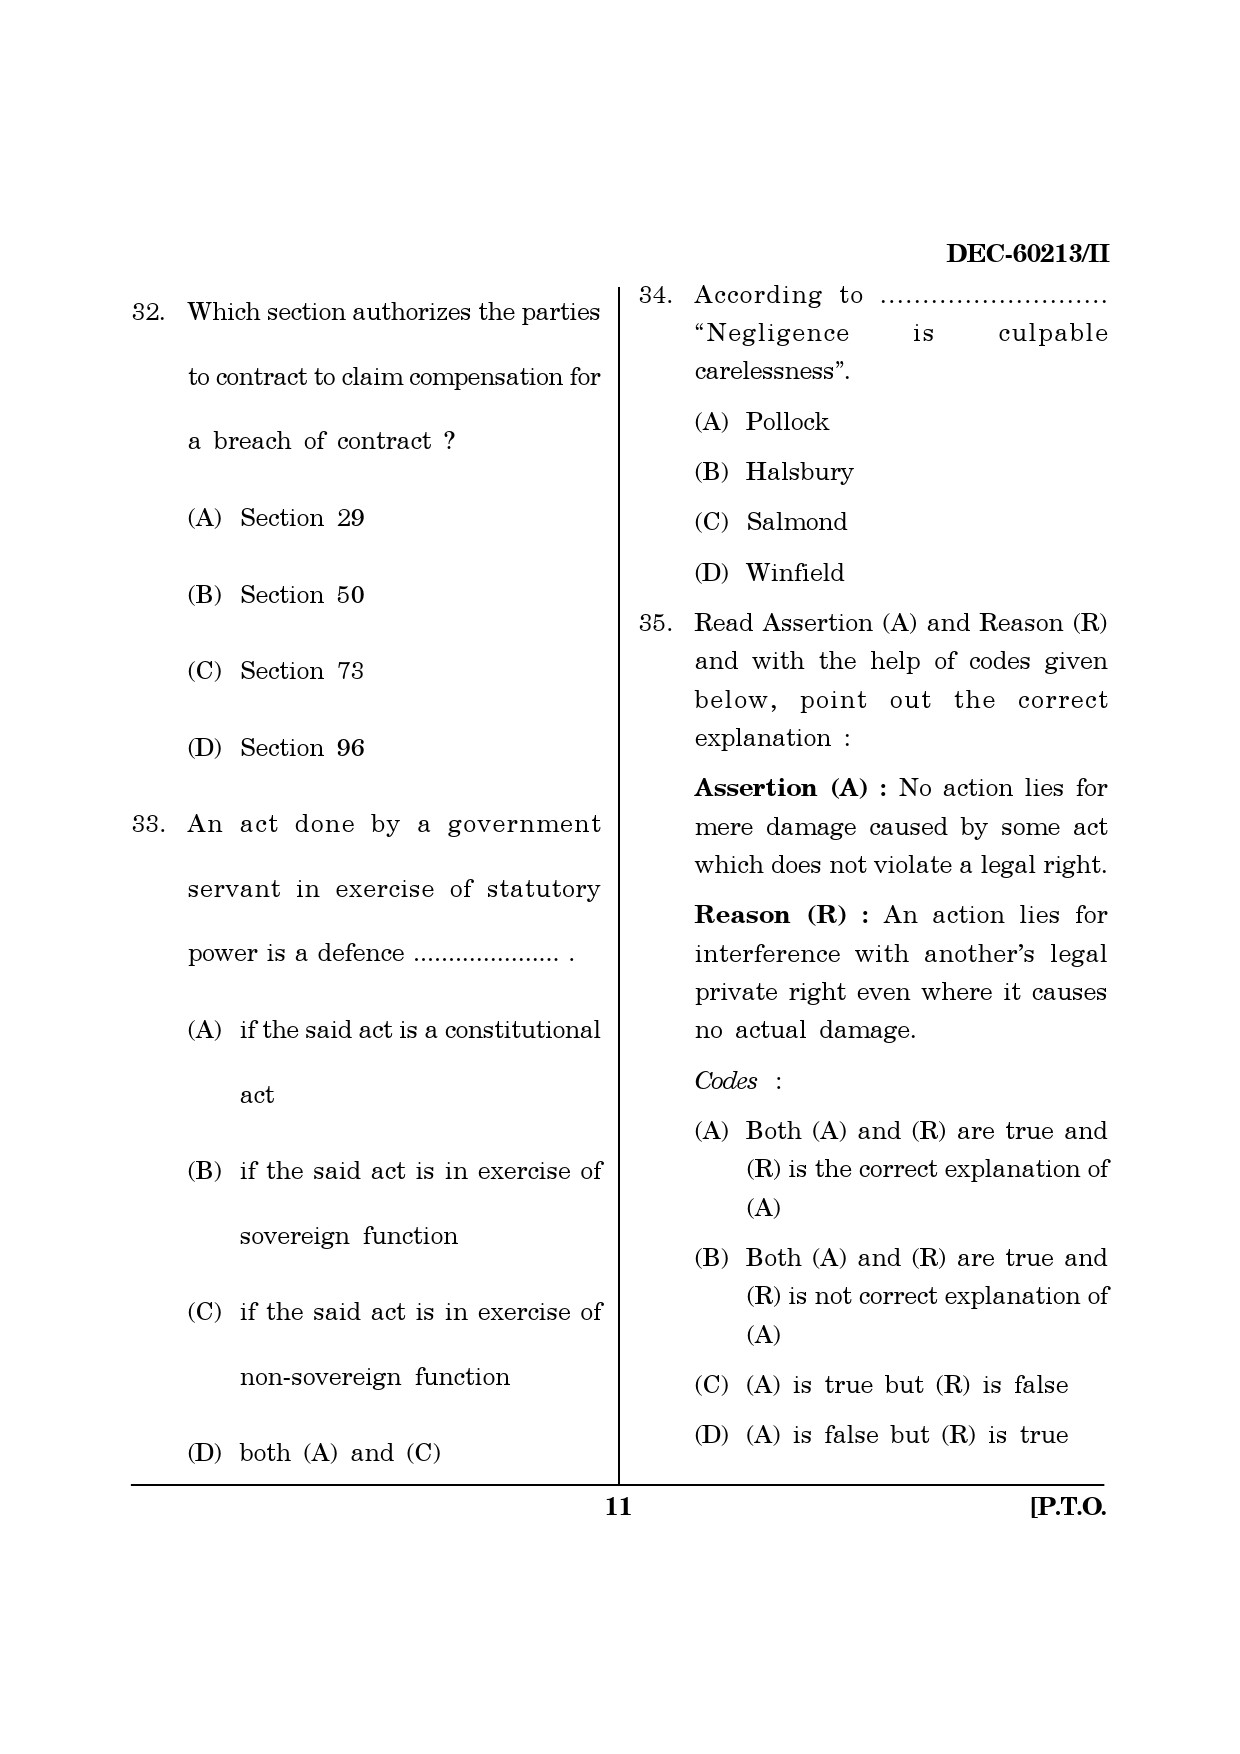 Maharashtra SET Law Question Paper II December 2013 10